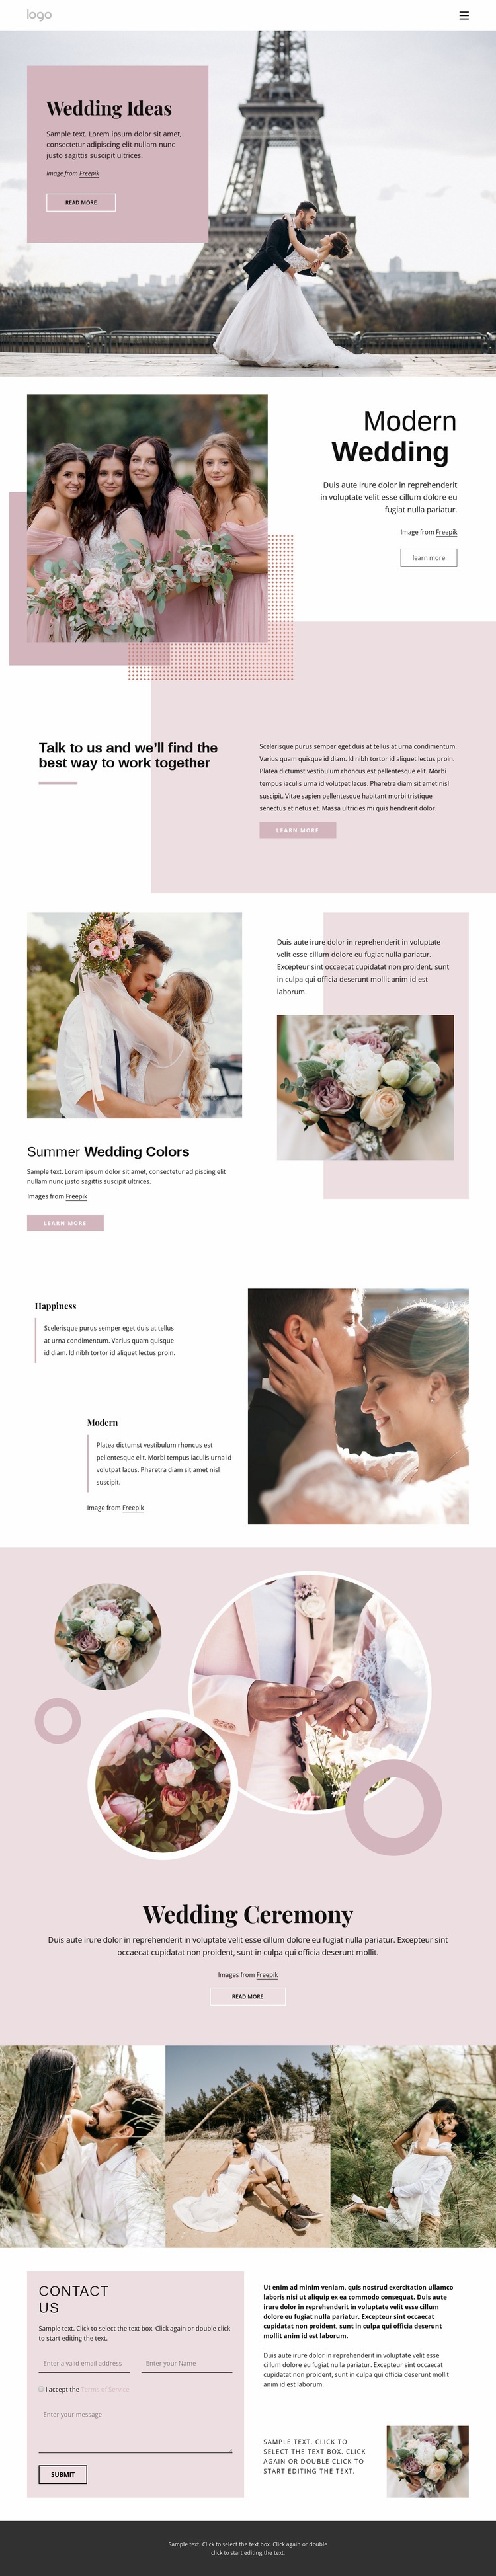 Unique wedding ceremony Web Page Design